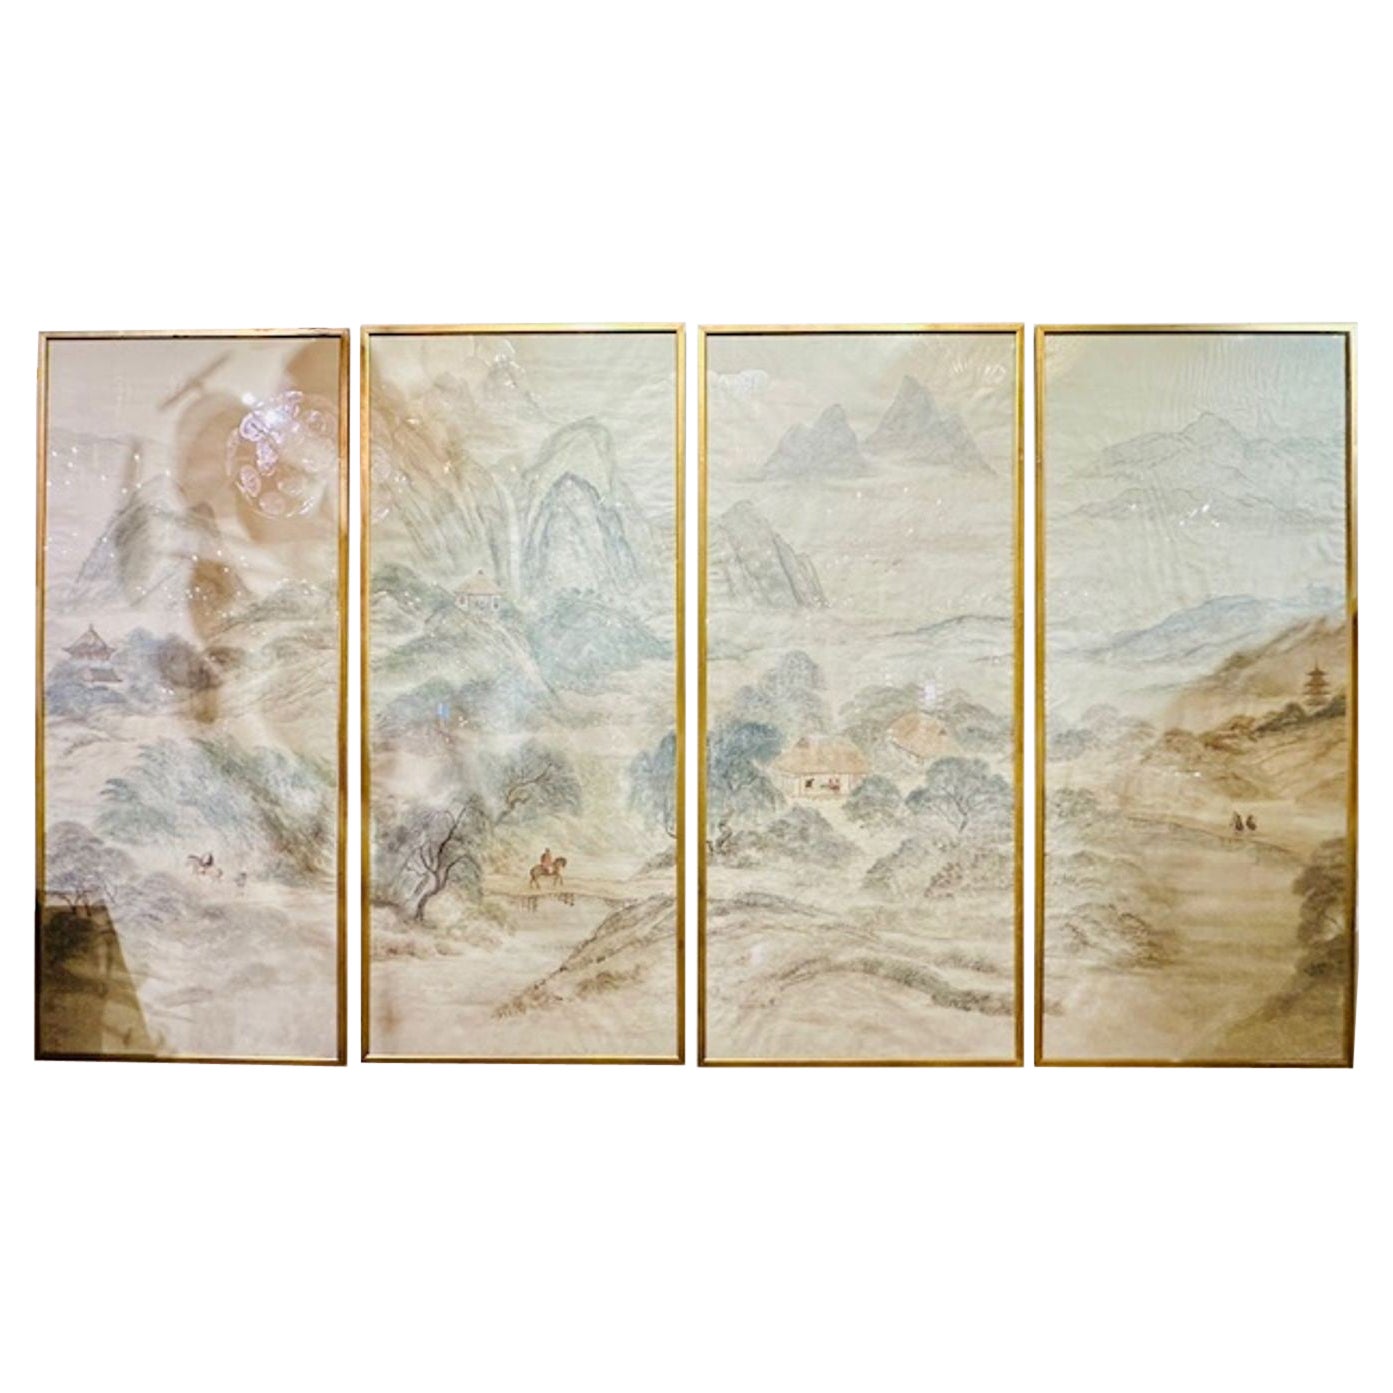 Panneaux peints encadrés de la dynastie chinoise Qing